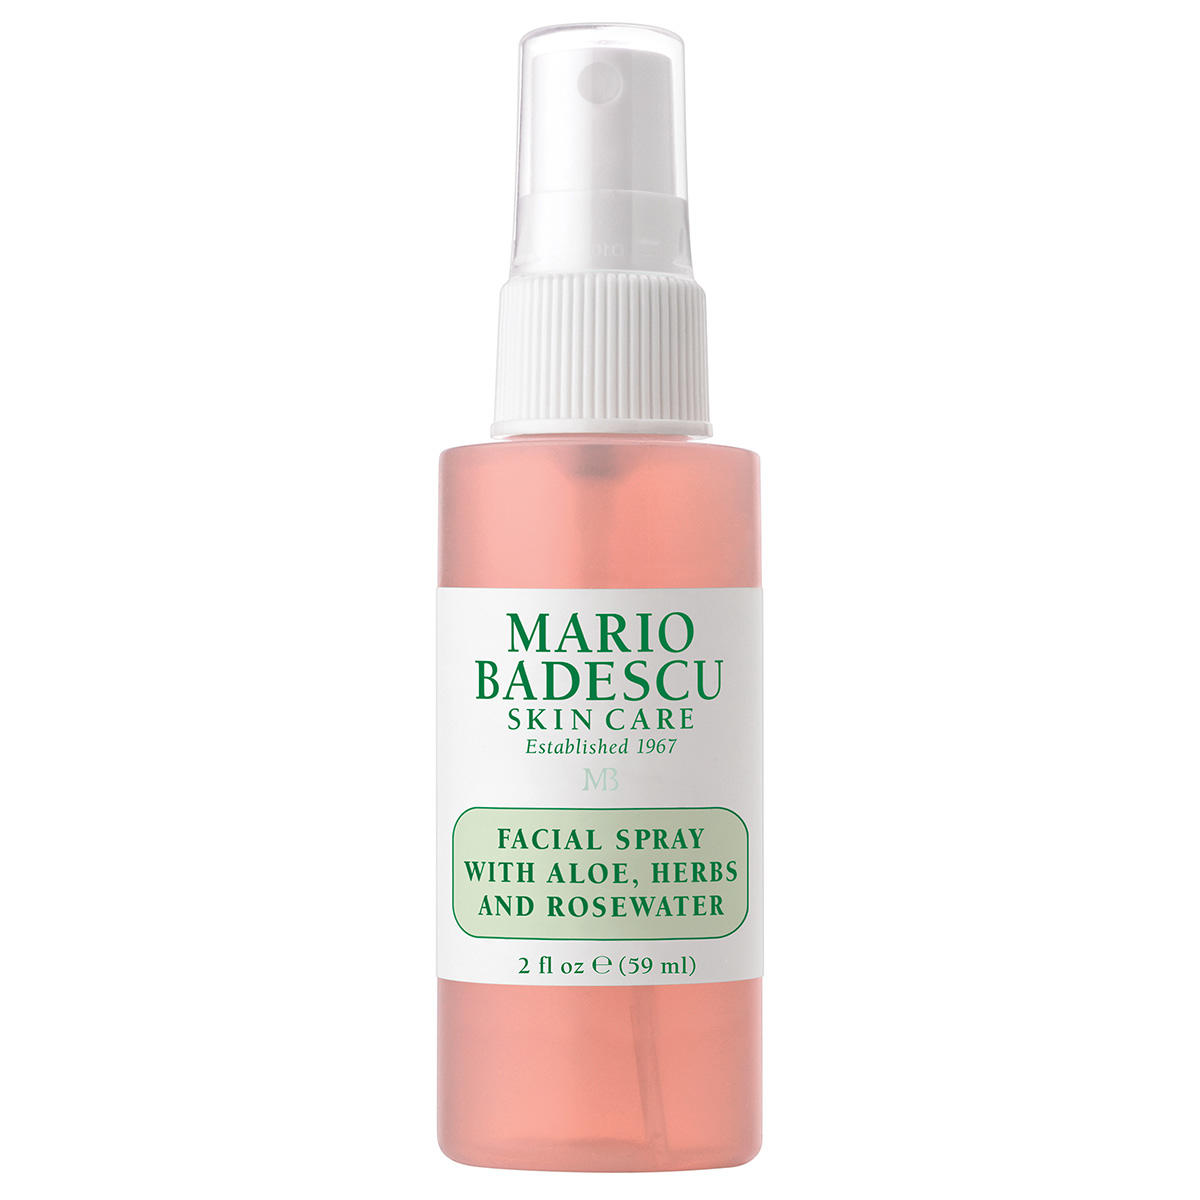 MARIO BADESCU Facial Spray with Aloe, Herbs and Rosewater 59 ml - 1